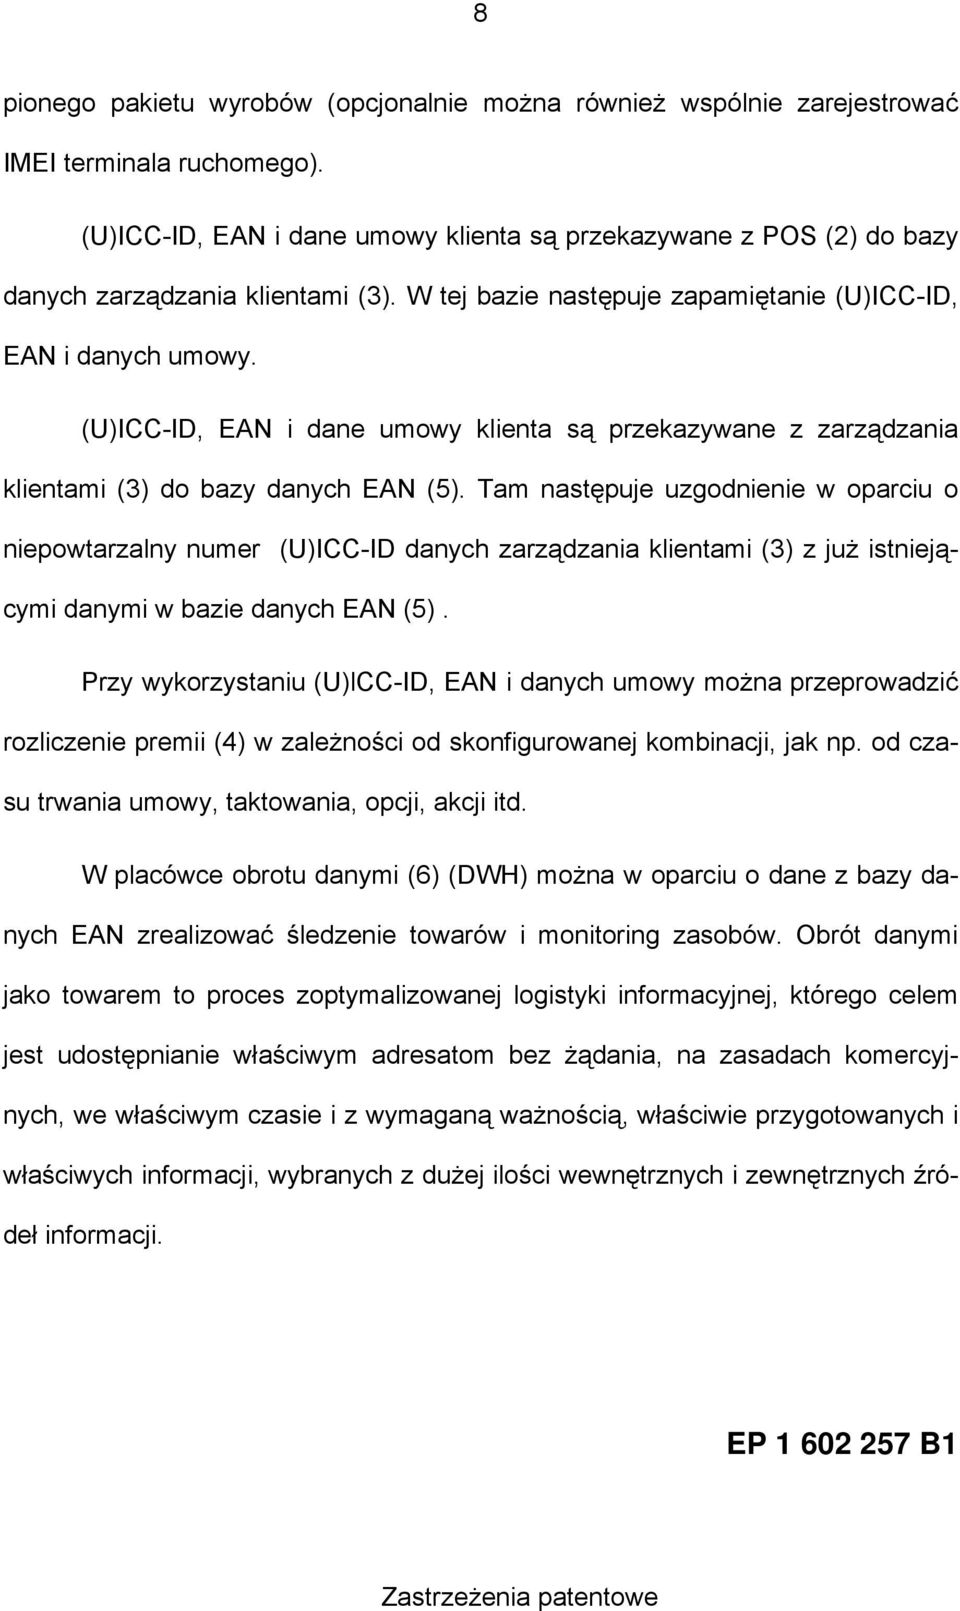 (U)ICC-ID, EAN i dane umowy klienta są przekazywane z zarządzania klientami (3) do bazy danych EAN (5).